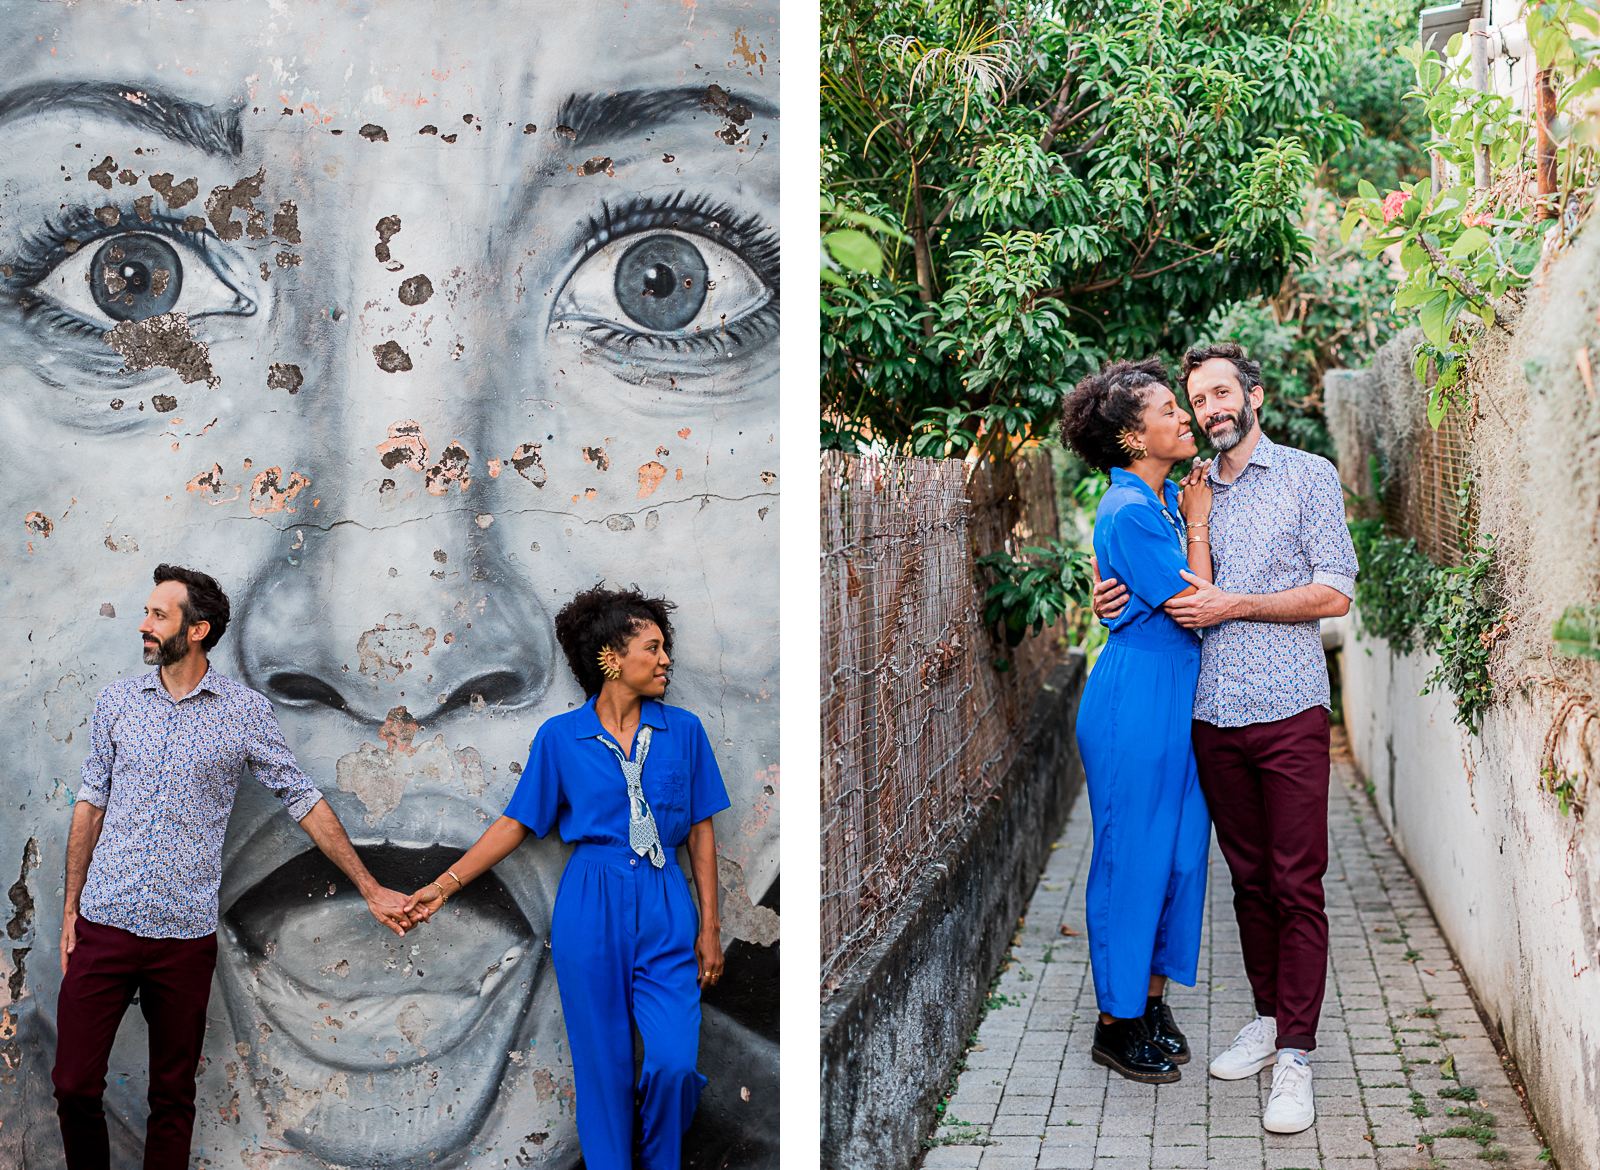 Photographie de Mathieu Dété présentant un couple amoureux dans les ruelles de Terre Sainte, un quartier de Saint-Pierre sur l'île de la Réunion